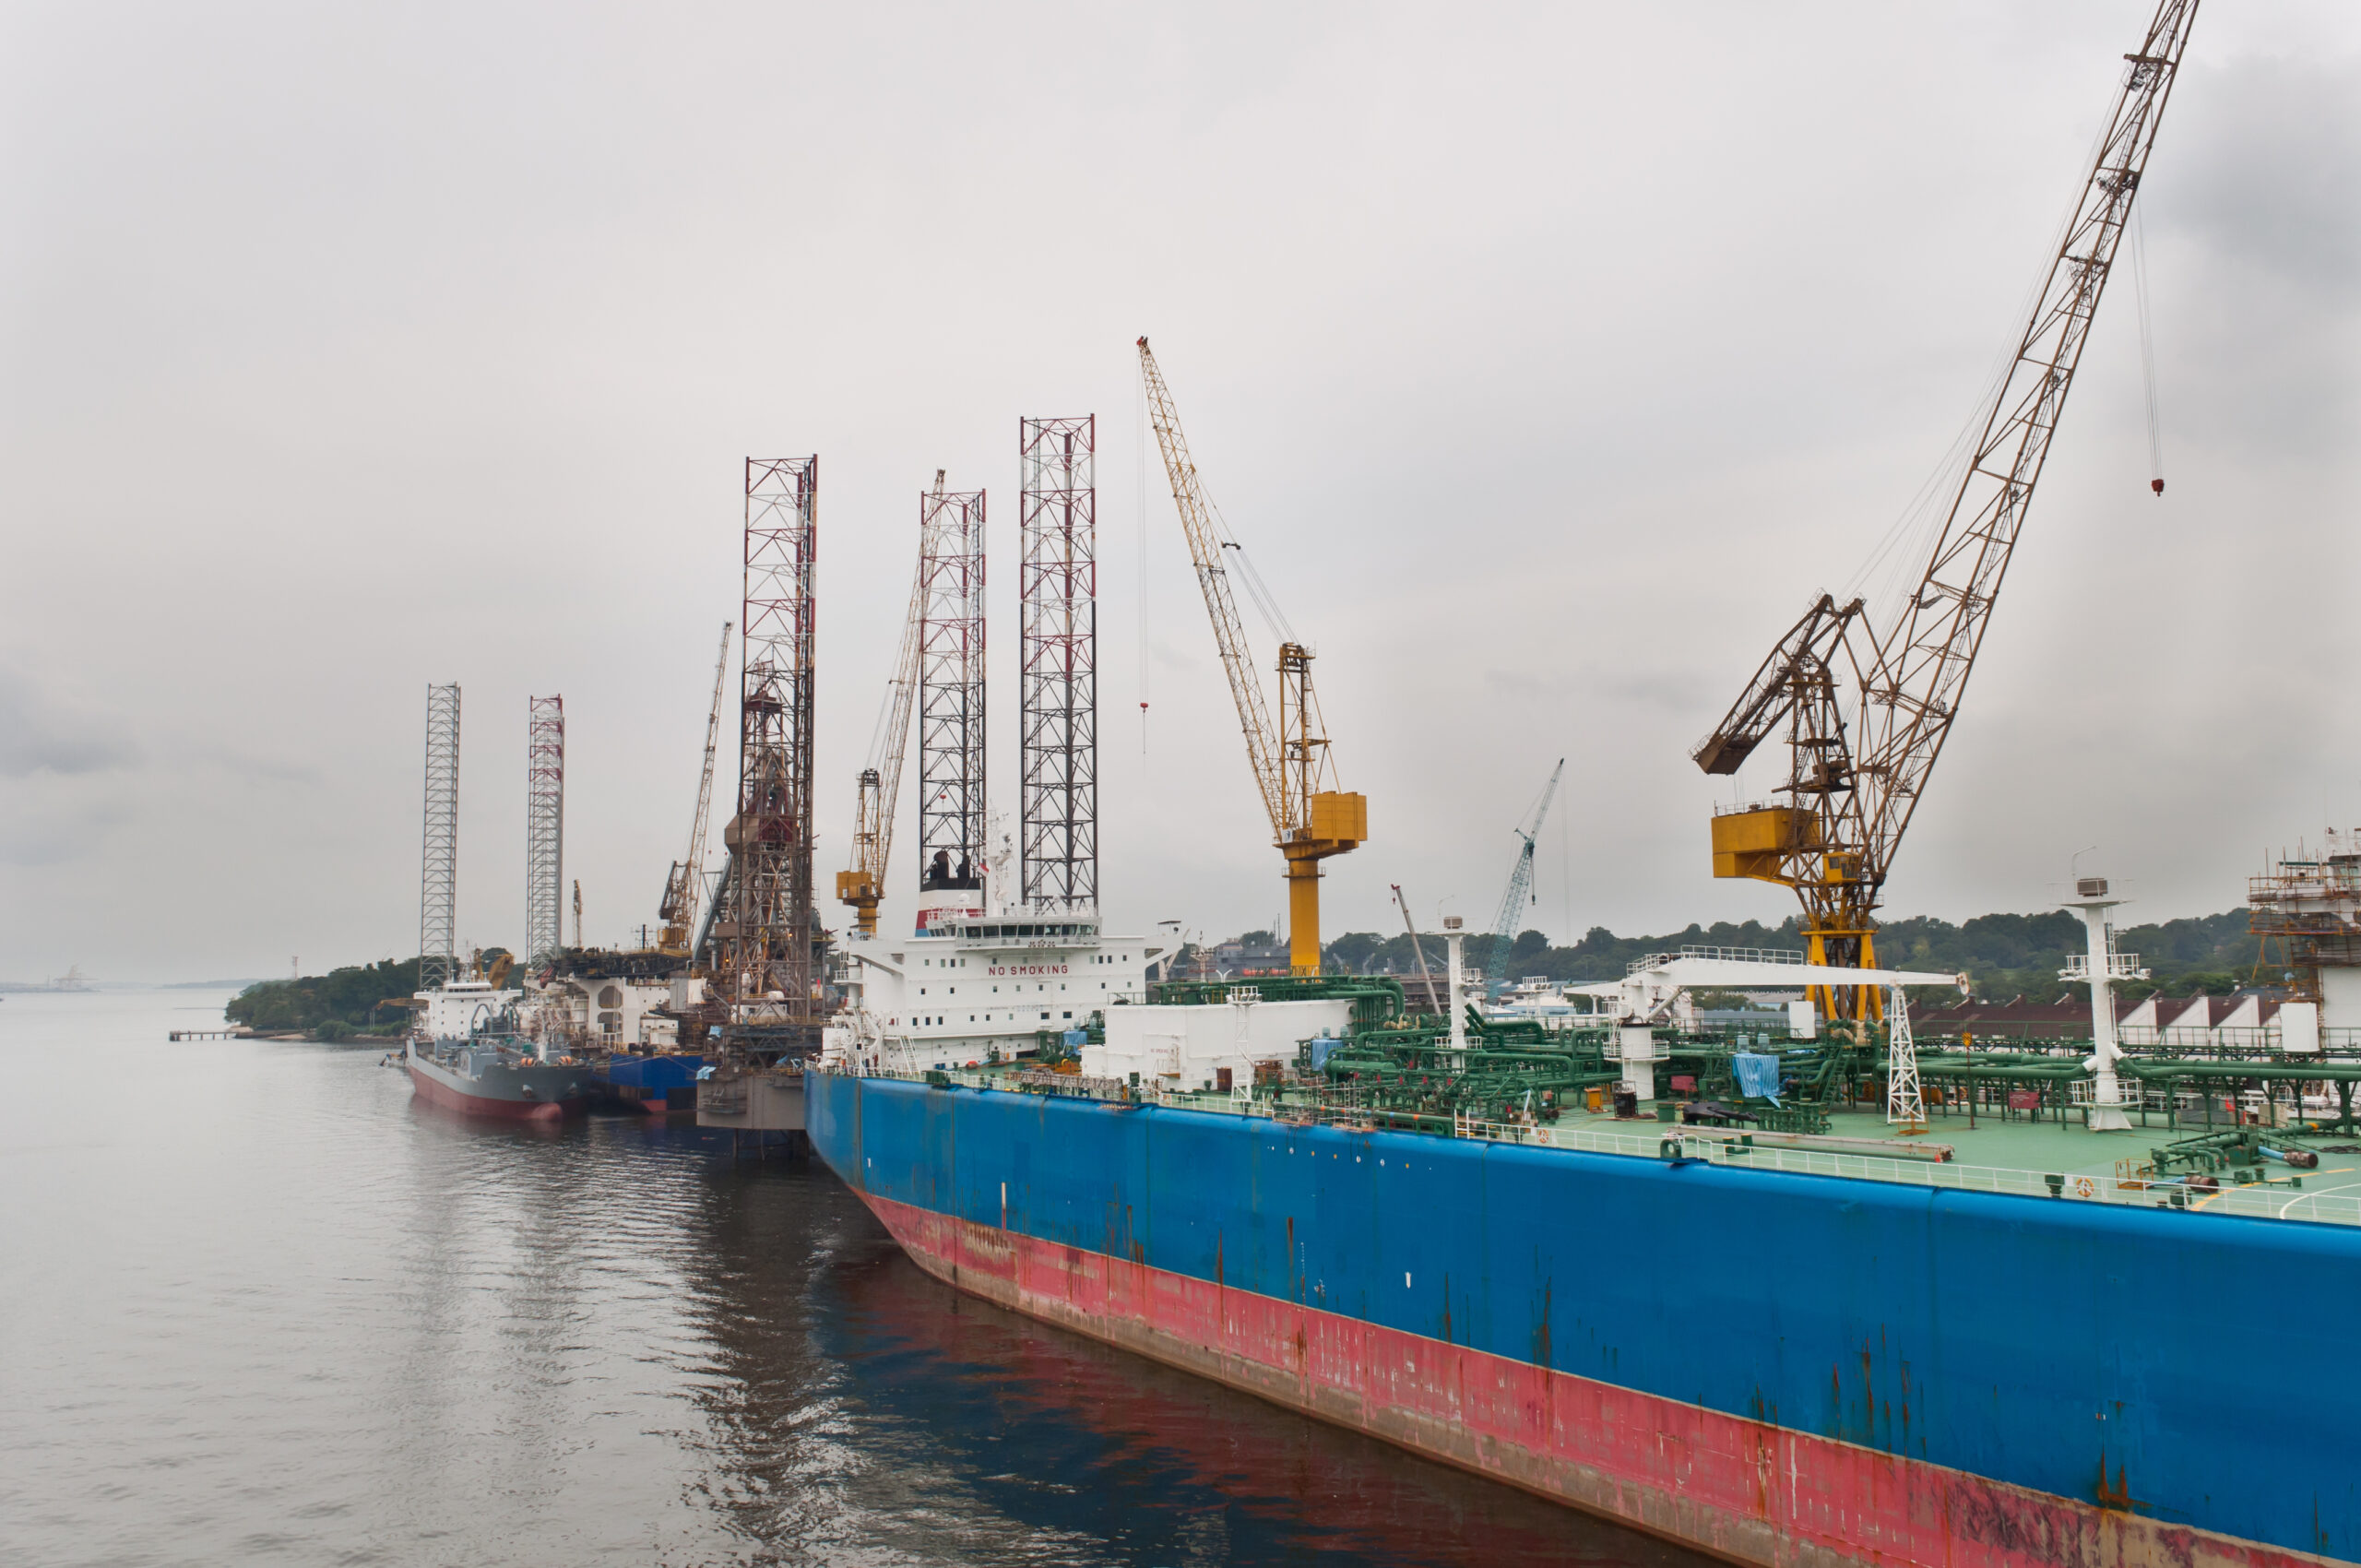 Tanker and Jackup Drilling Units in Sembawang shipyard in Singapore.